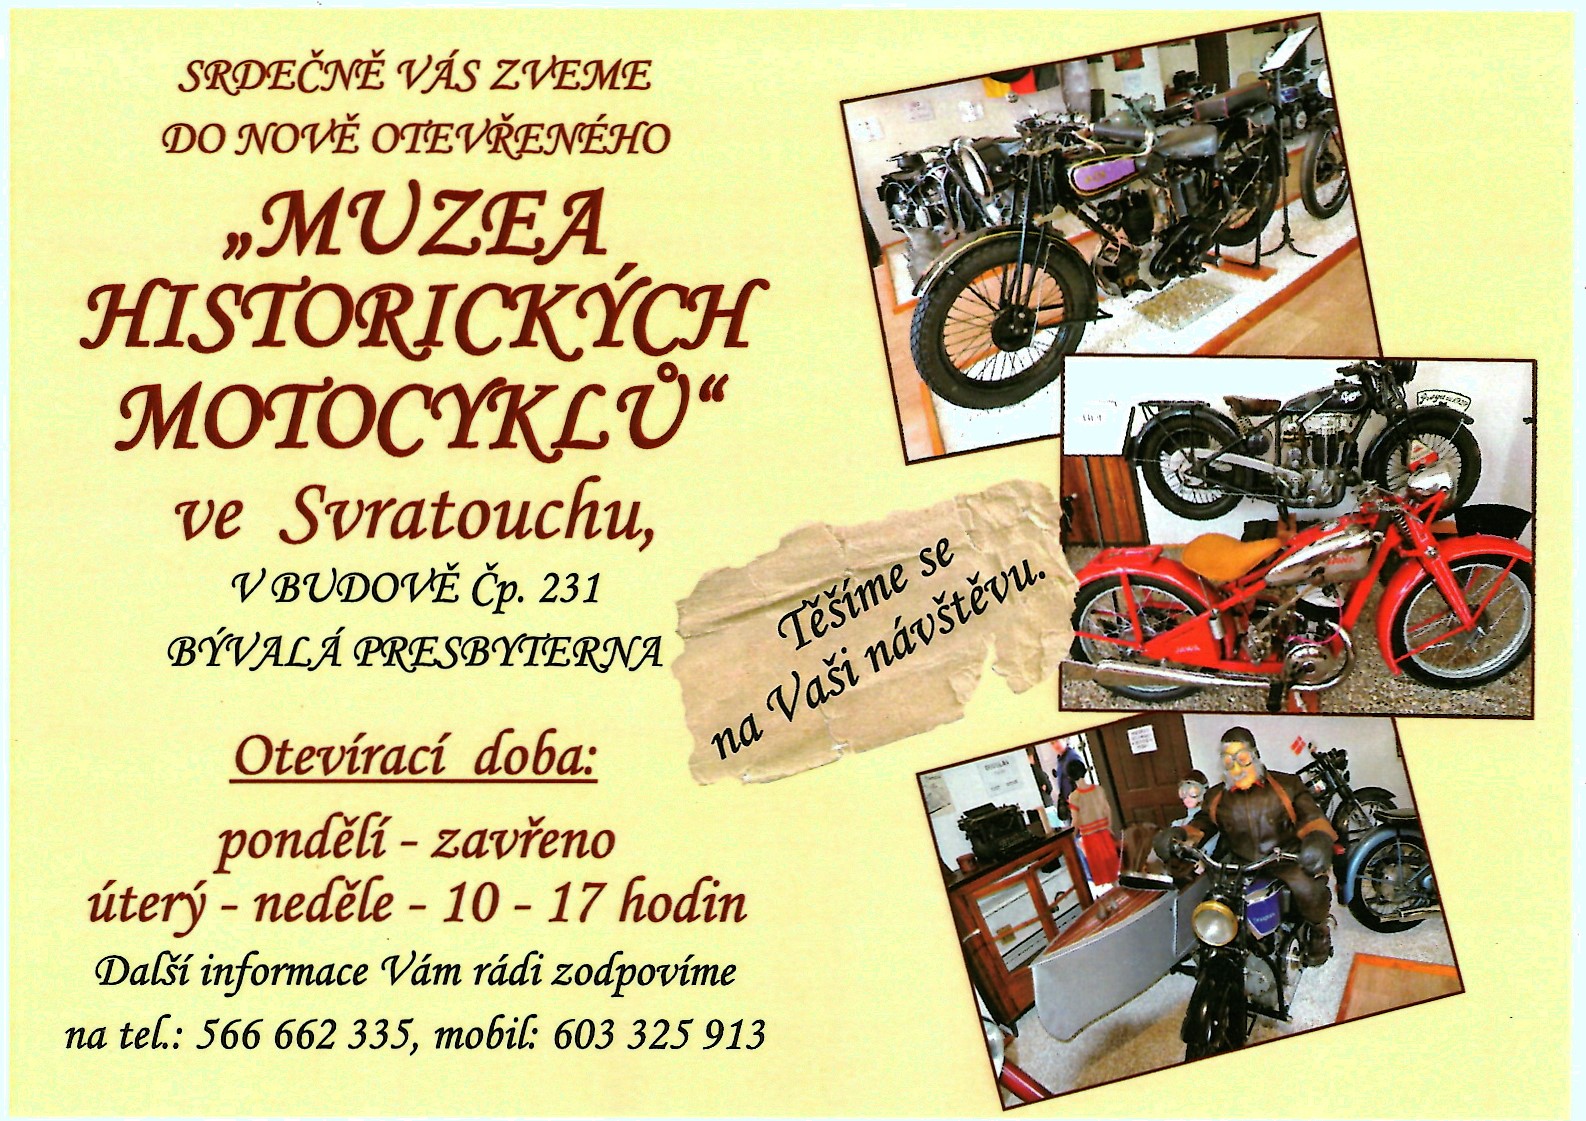 Muzeum historických motocyklů ve Svratouchu